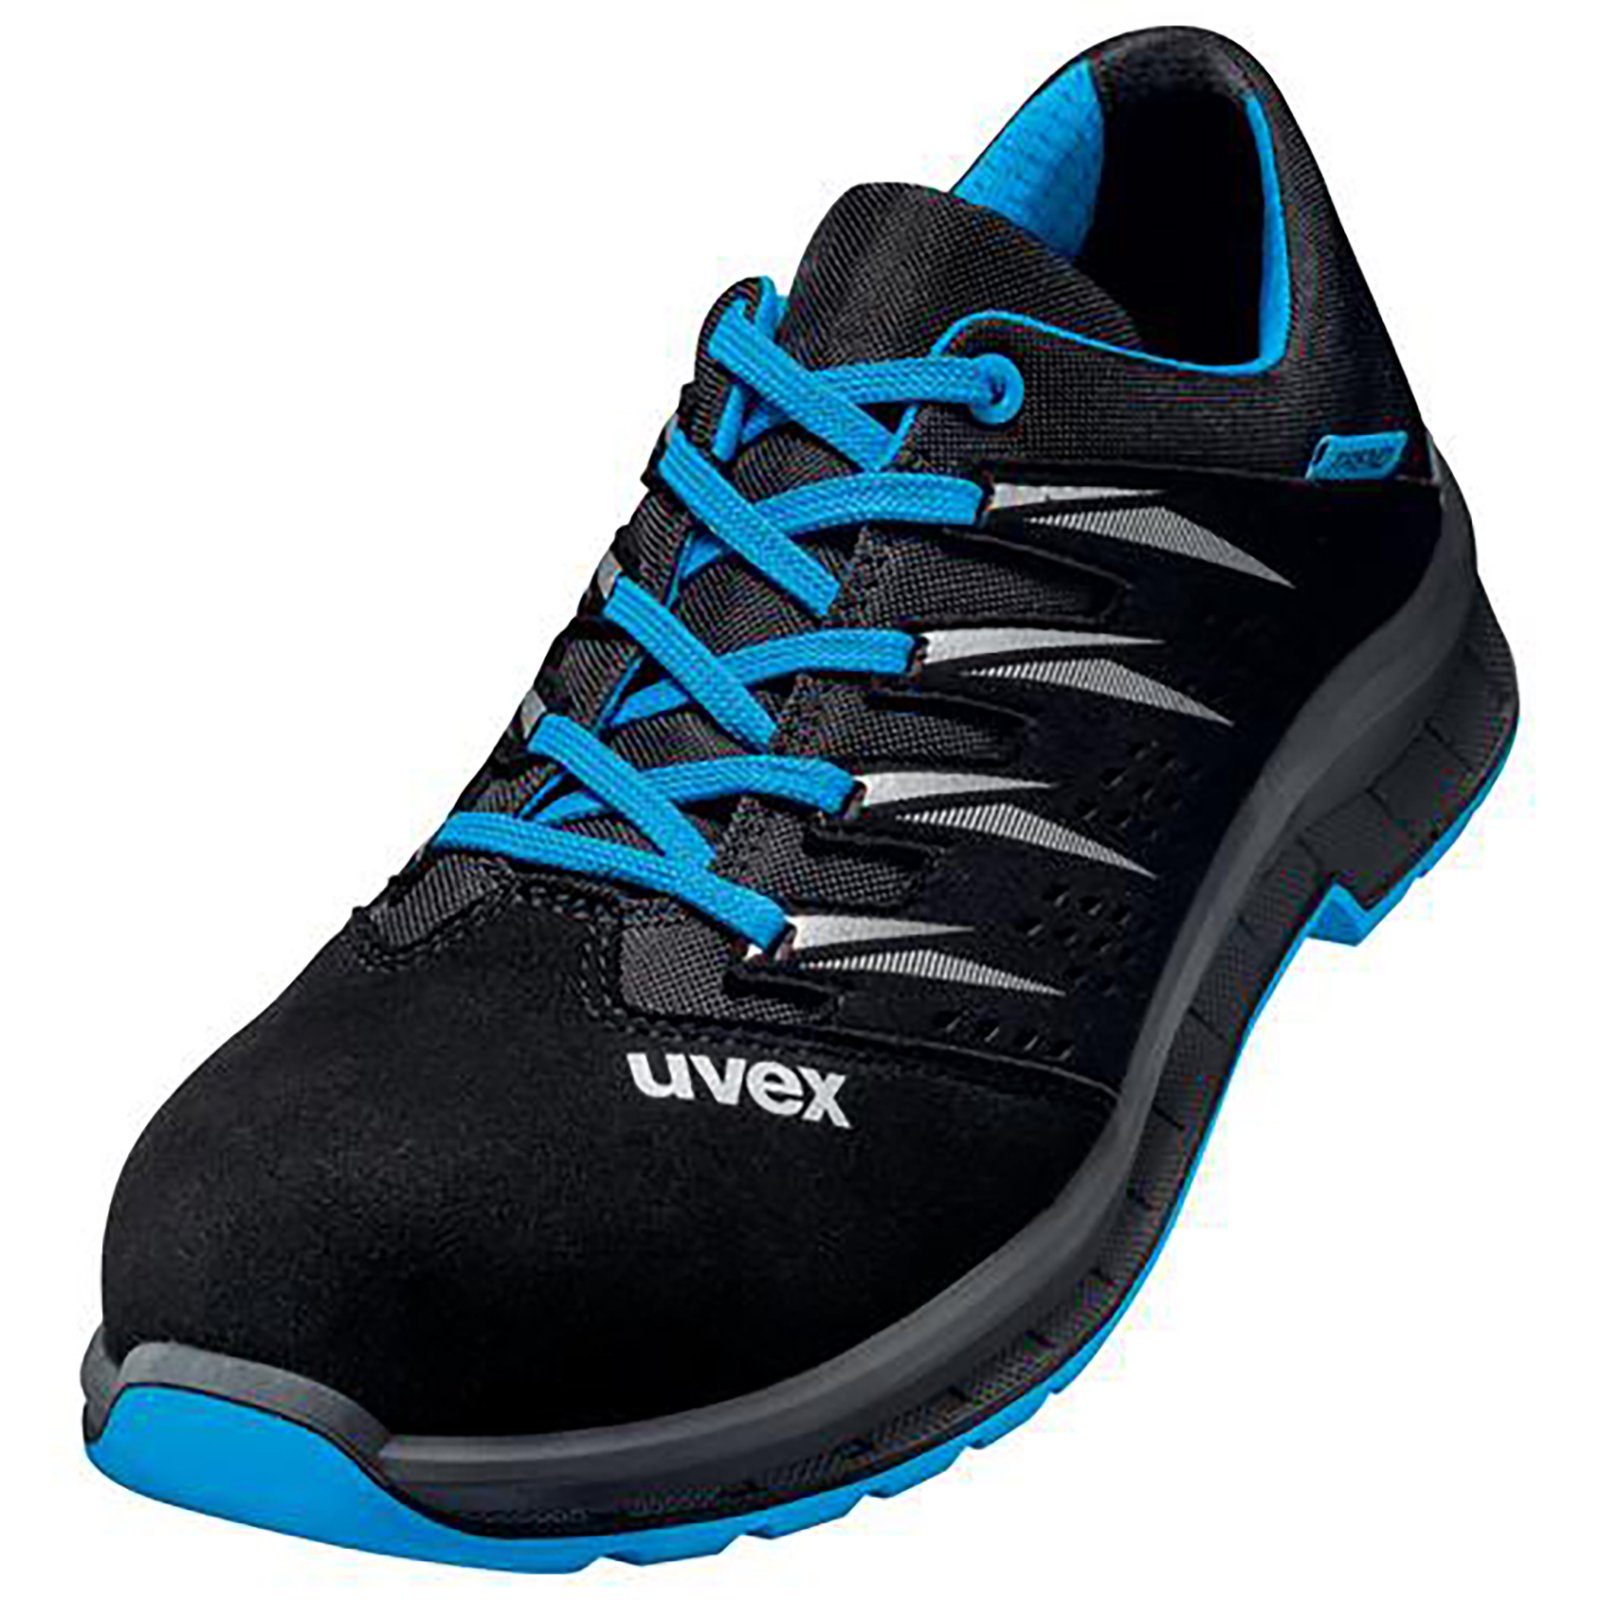 Uvex 2 trend Halbschuhe 12 Weite Sicherheitsschuh S1 blau, schwarz